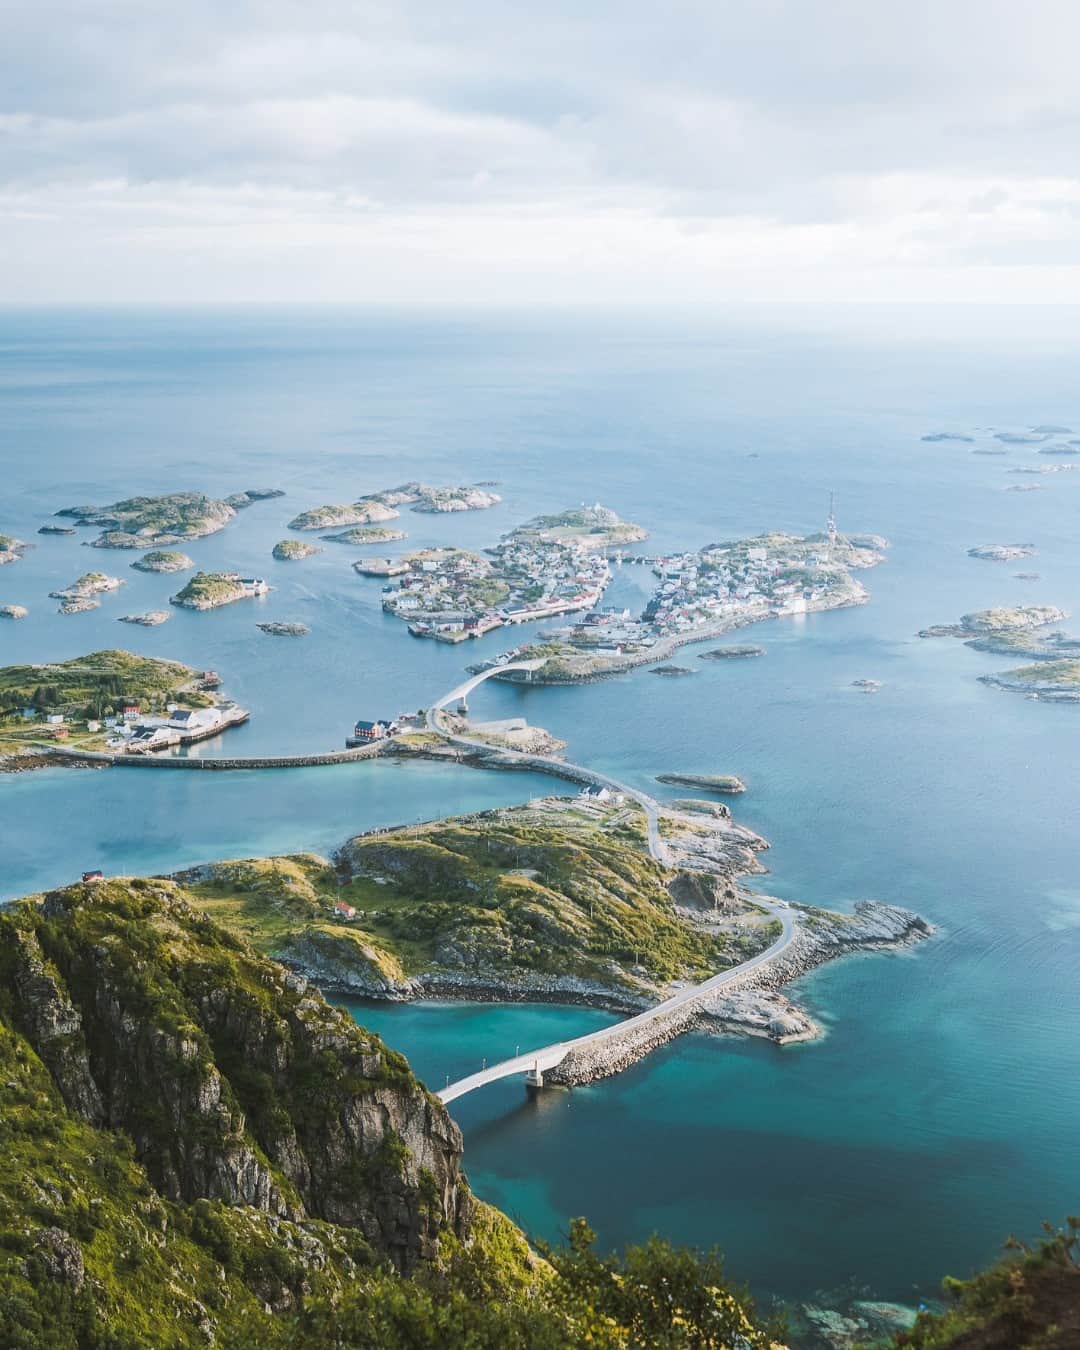 📸 Norvég fotótúra a Lofoten szigeteken 📸

A szigetcsoport az UNESCO Világörökség részét képezi, a National Geographic szerint pedig ez a világ harmadik legvonzóbb turisztikai úti célja. 🤩

Csatlakozz norvég fotótúránkhoz mihamarabb, mert a létszám LIMITÁLT!
.
.
.
.
.
.
#bestphototour #photographytour #norway #norwayphotography #landscapephotography #northernlights #lofoten #lofotenphotography #quotes #travelwithus #travelling #travel #fotótúra #fotóstúra #photographer #utazzvelünk #magyarfotoklub #utazossztorik